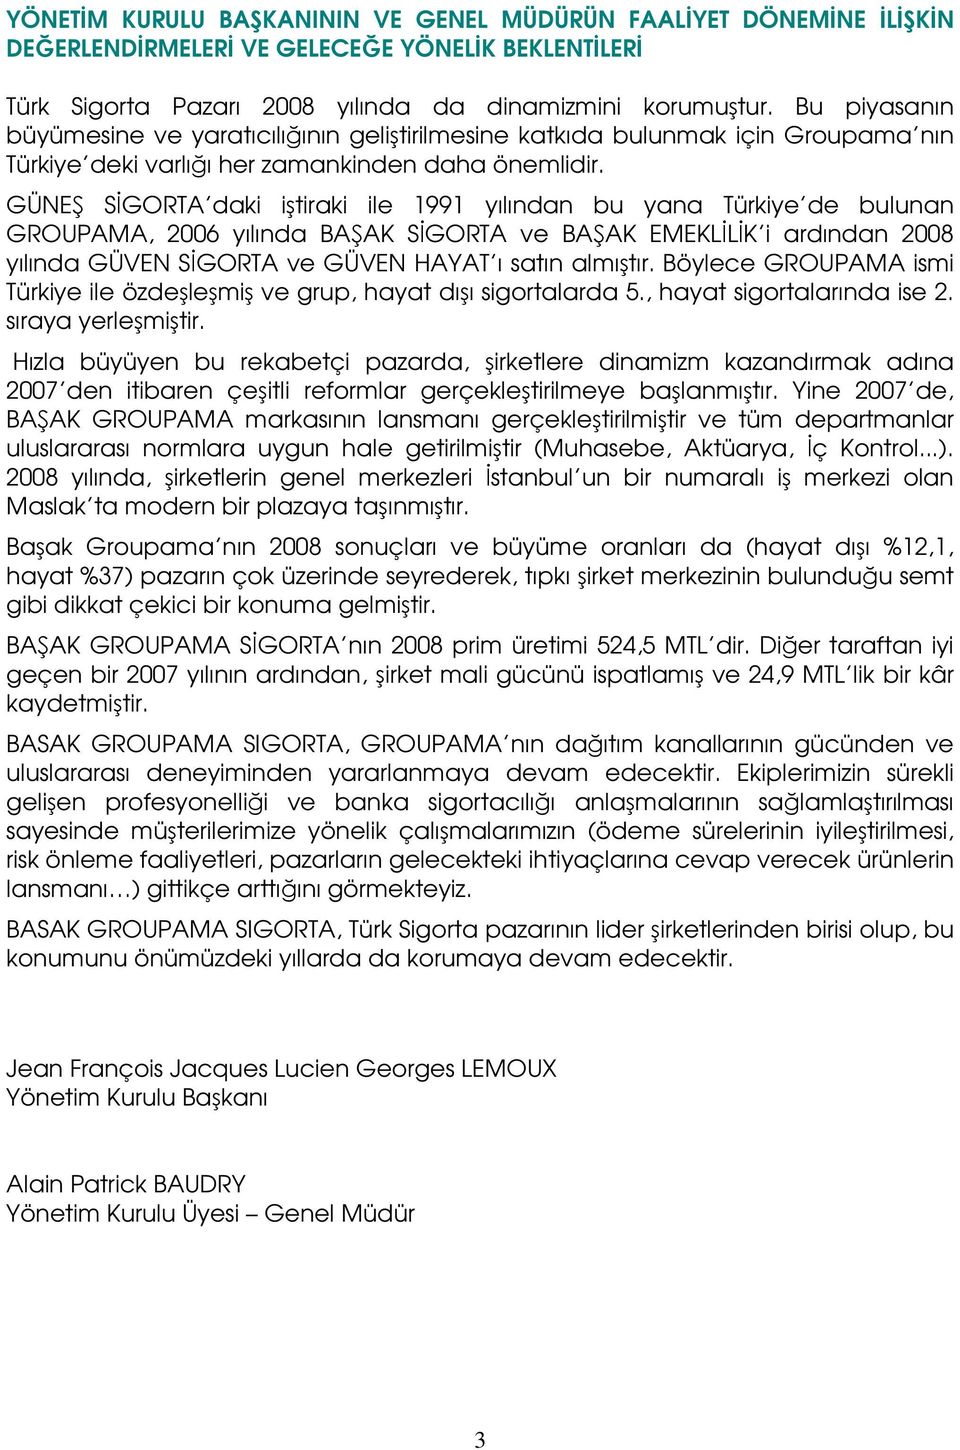 GÜNEŞ SĐGORTA daki iştiraki ile 1991 yılından bu yana Türkiye de bulunan GROUPAMA, 2006 yılında BAŞAK SĐGORTA ve BAŞAK EMEKLĐLĐK i ardından 2008 yılında GÜVEN SĐGORTA ve GÜVEN HAYAT ı satın almıştır.